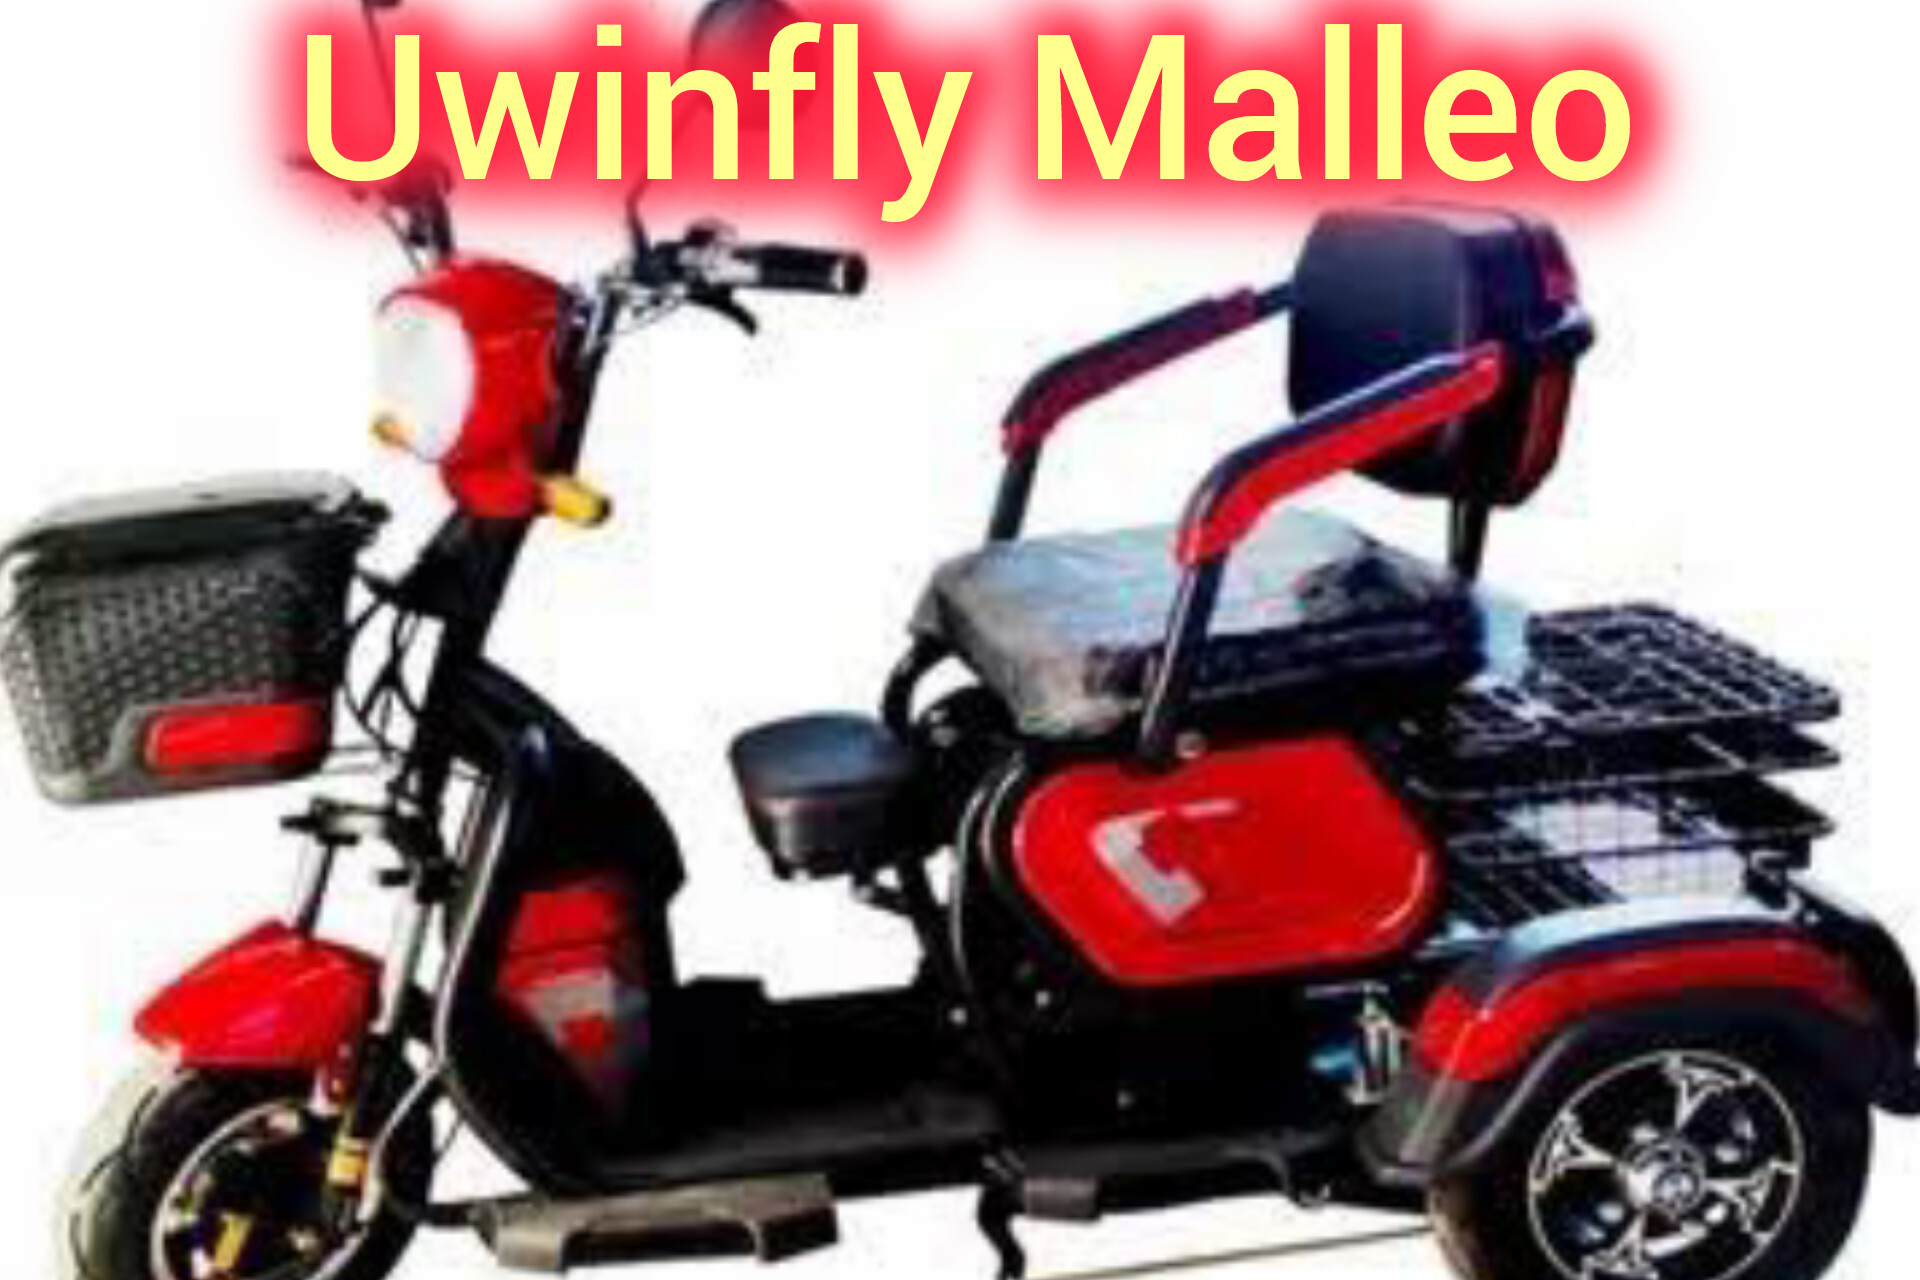 Motor Listrik Uwinfly Malleo, Desain Unik Dengan Roda 3 dan Remote System Hingga Daya 1500W